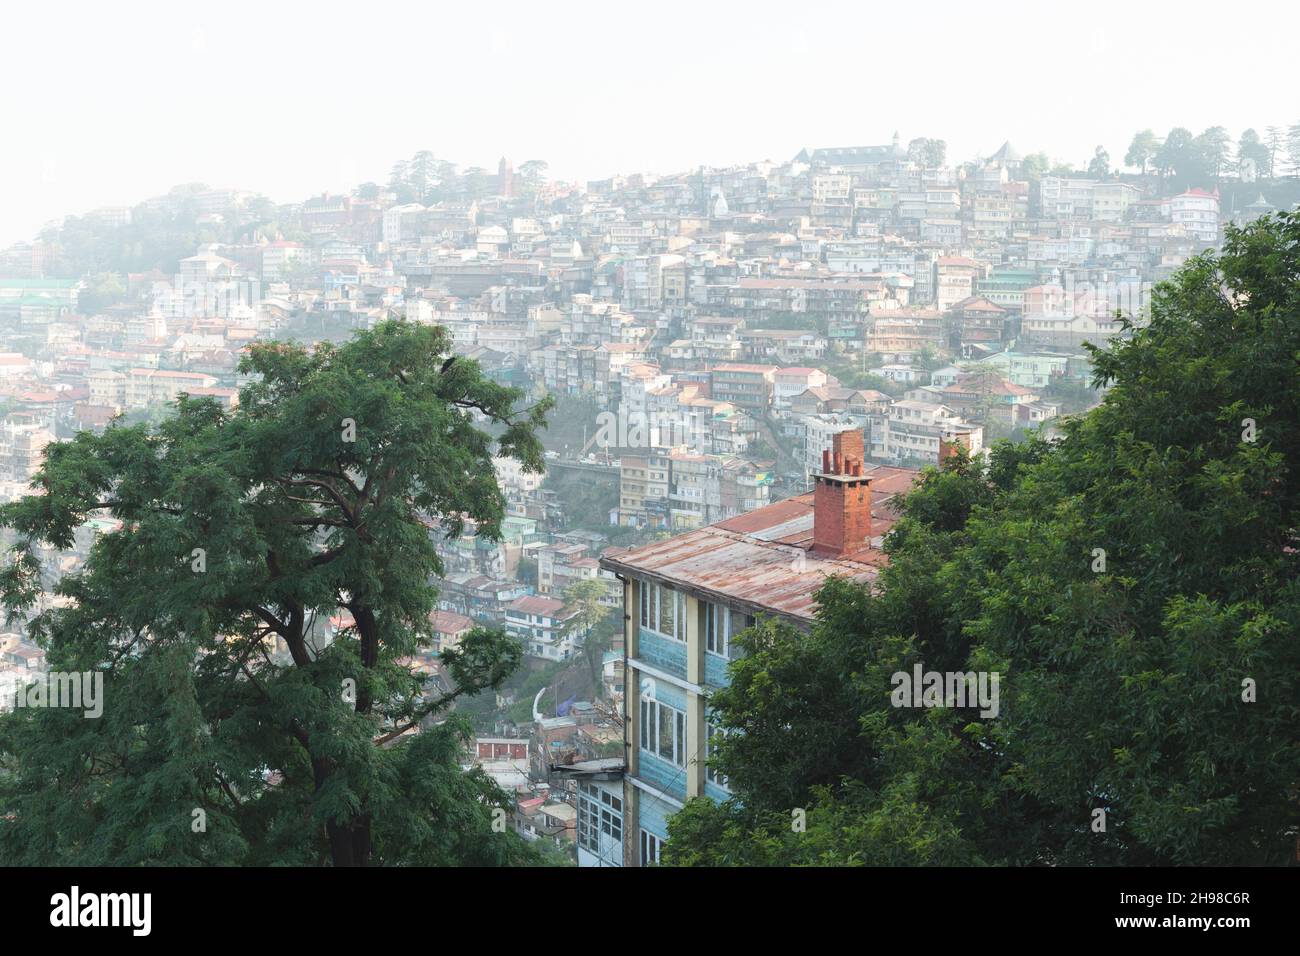 Vue sur la ville de Shimla dans l'Himalaya indien la capitale de l'État indien Himachal Pradesh.Shimla, Himachal Prades, Inde.Photographie de paysage Banque D'Images